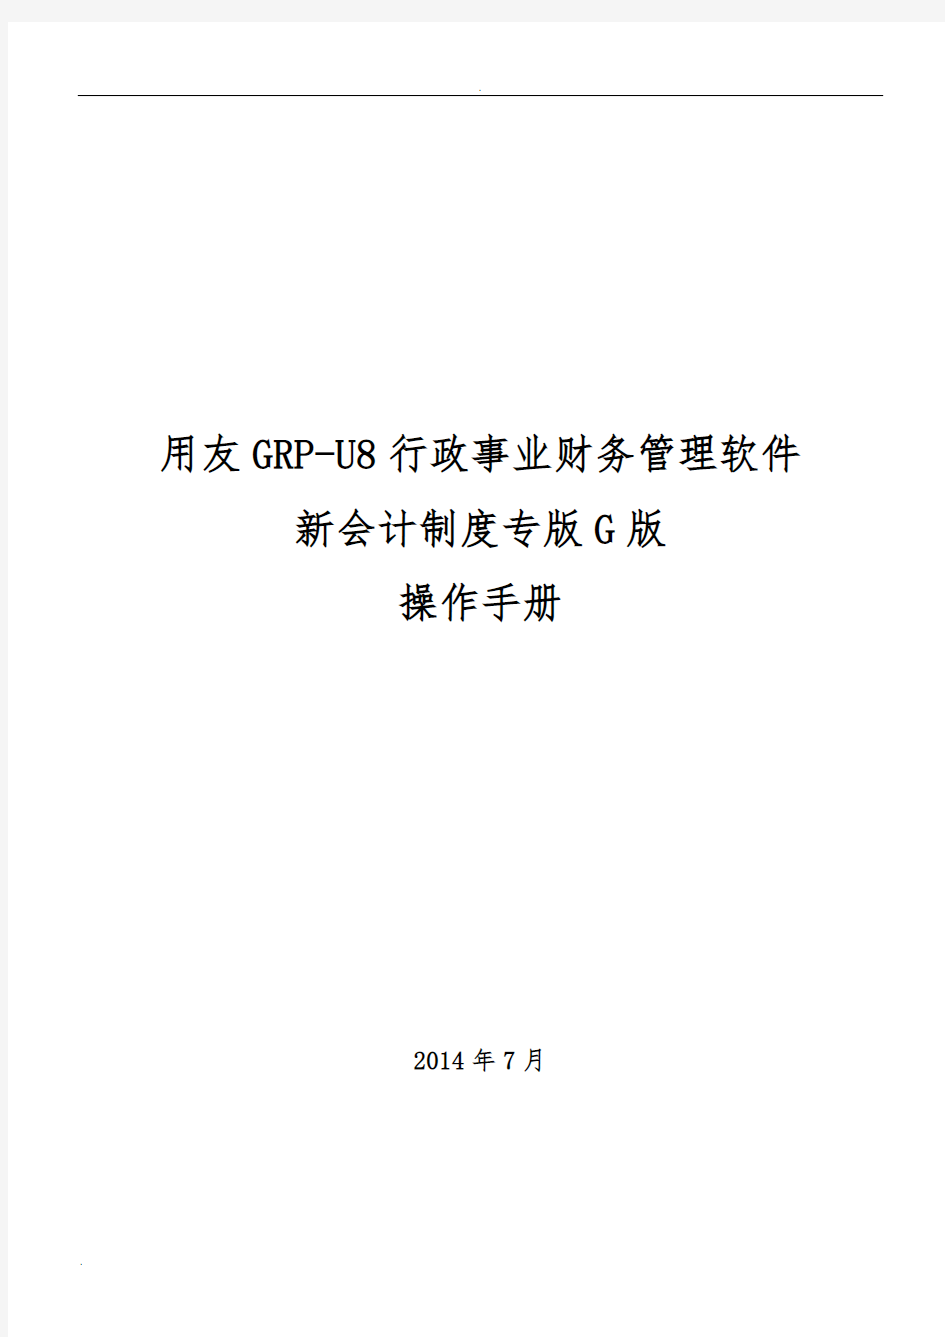 用友GRP-U8 行政事业单位财务管理软件G版操作手册_图文